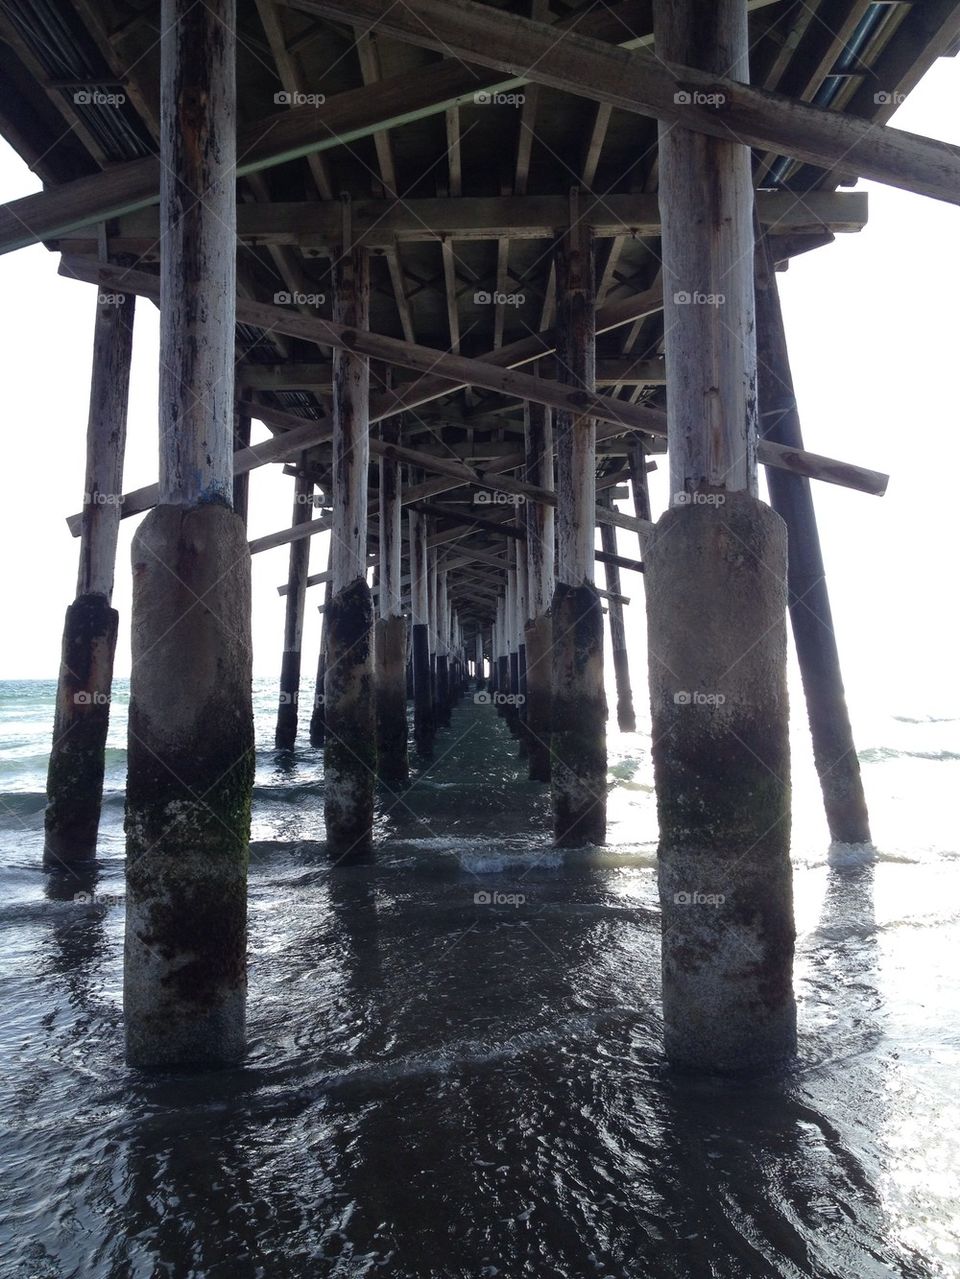 Newport Beach Pier